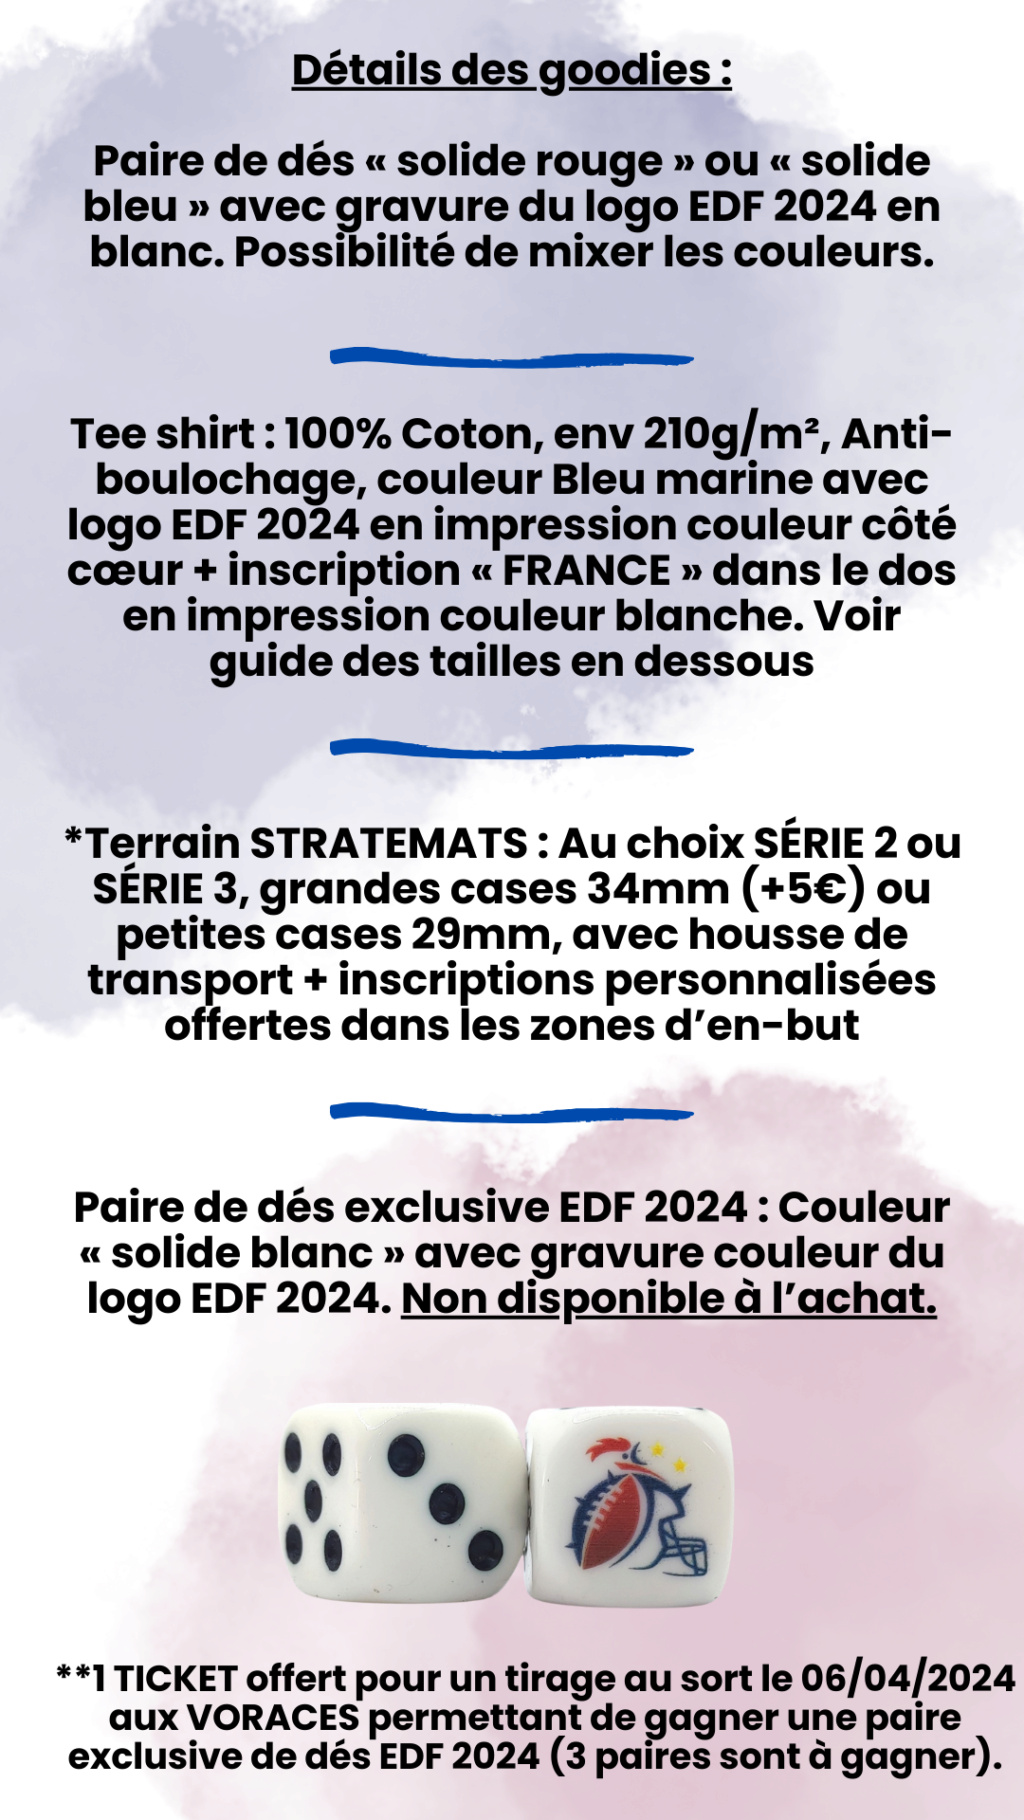 Les goodies EDF 2024 ! 314